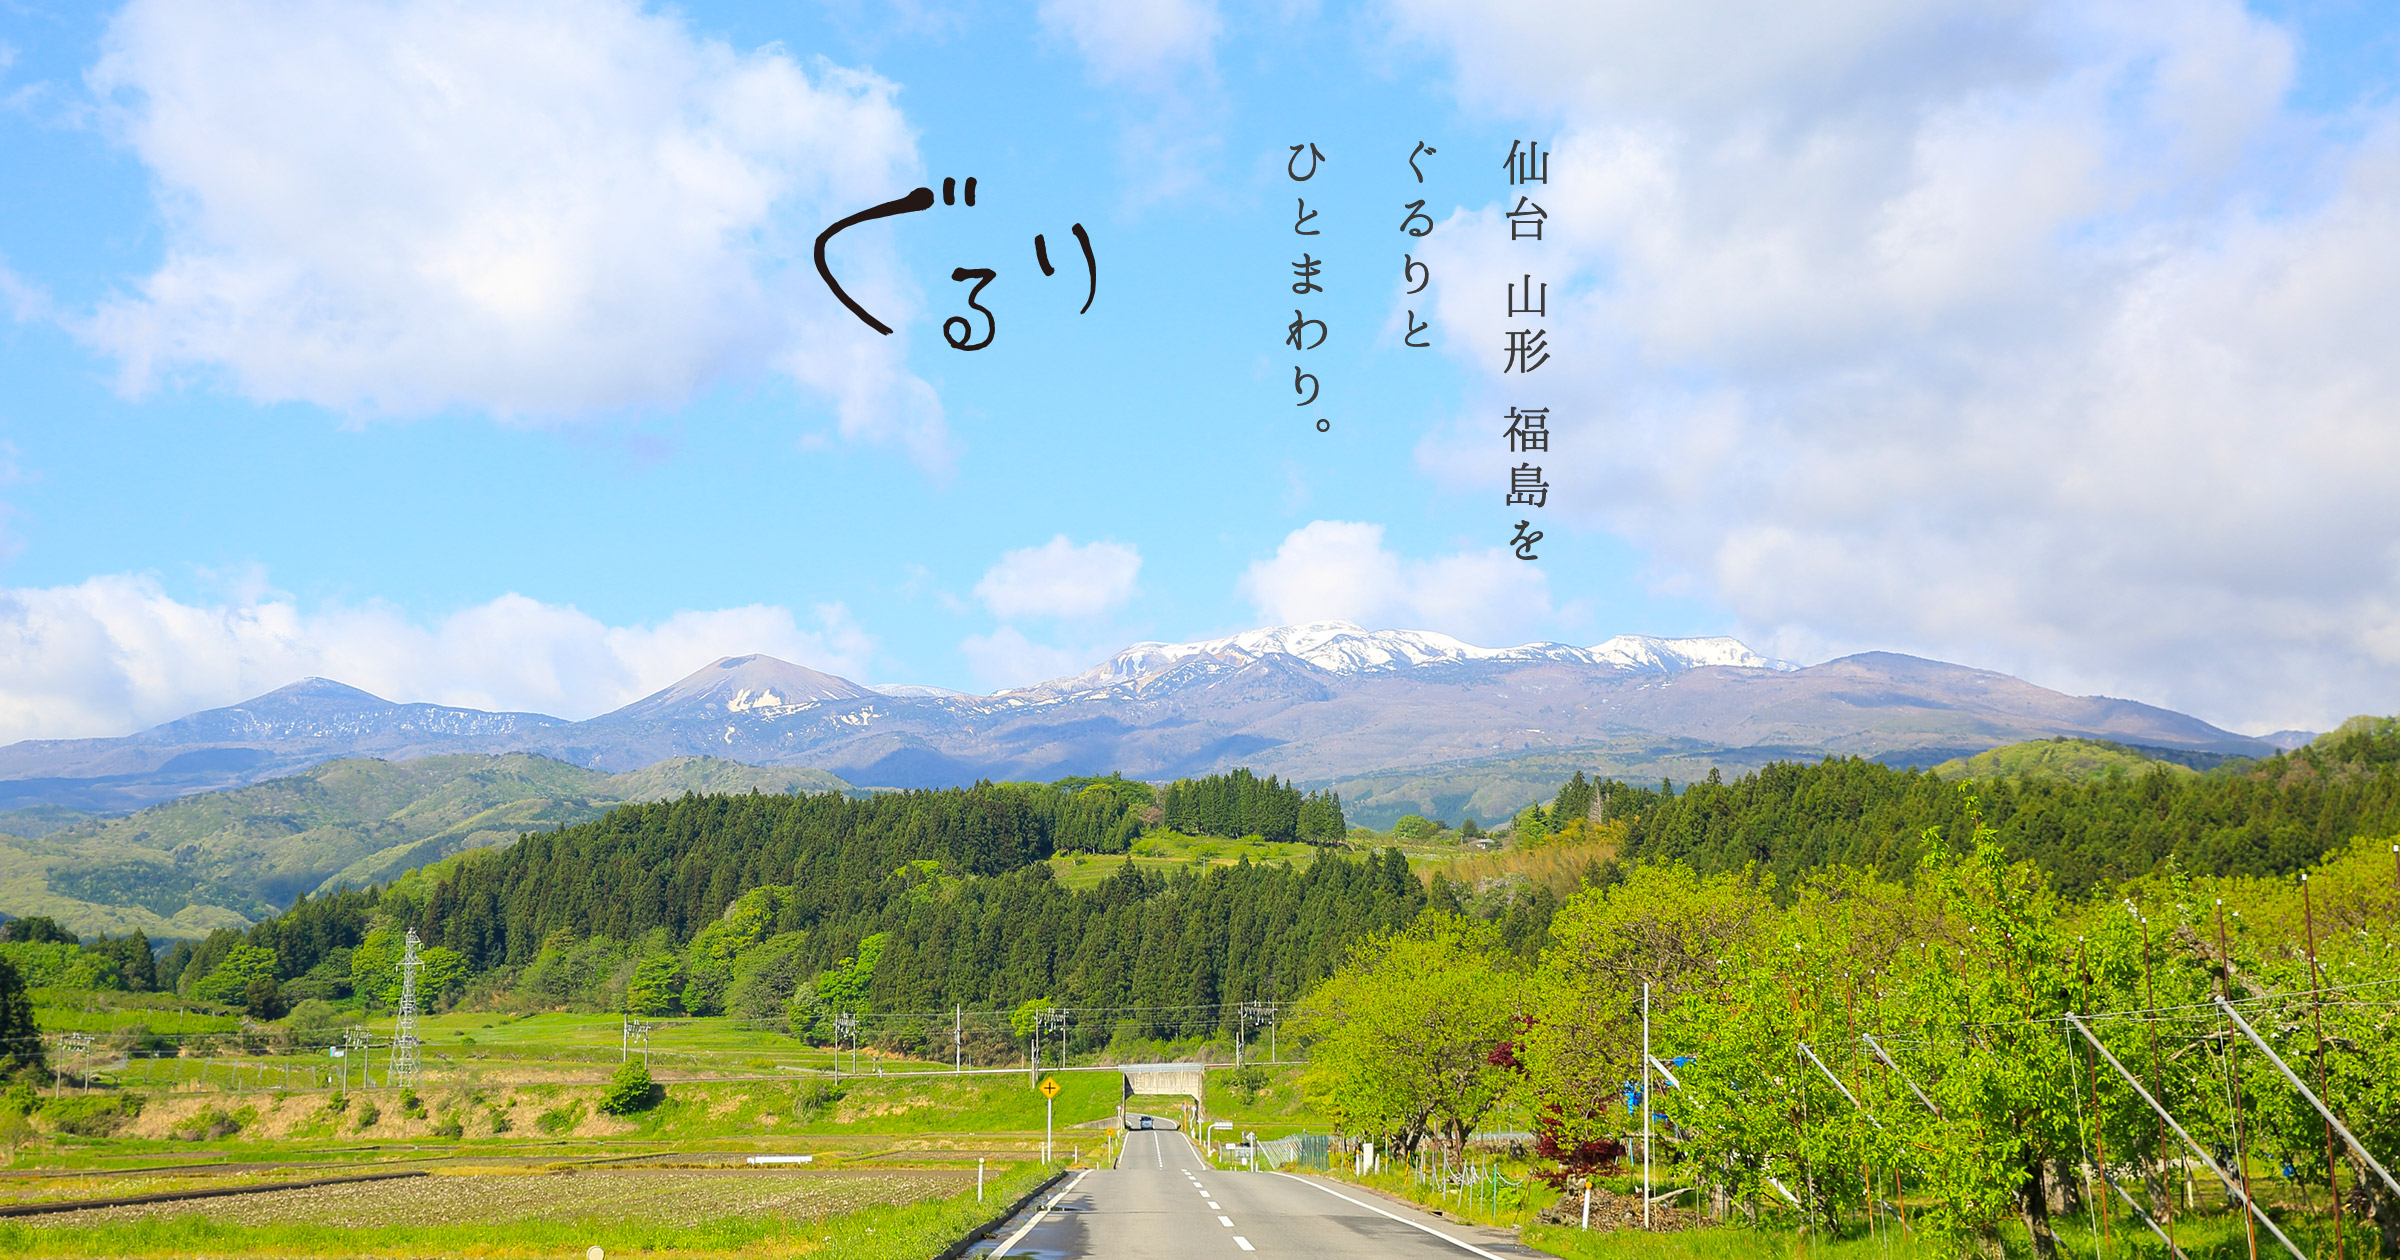 ぐるめ図鑑 ぐるり公式サイト 仙台 山形 福島をぐるりとひとまわり